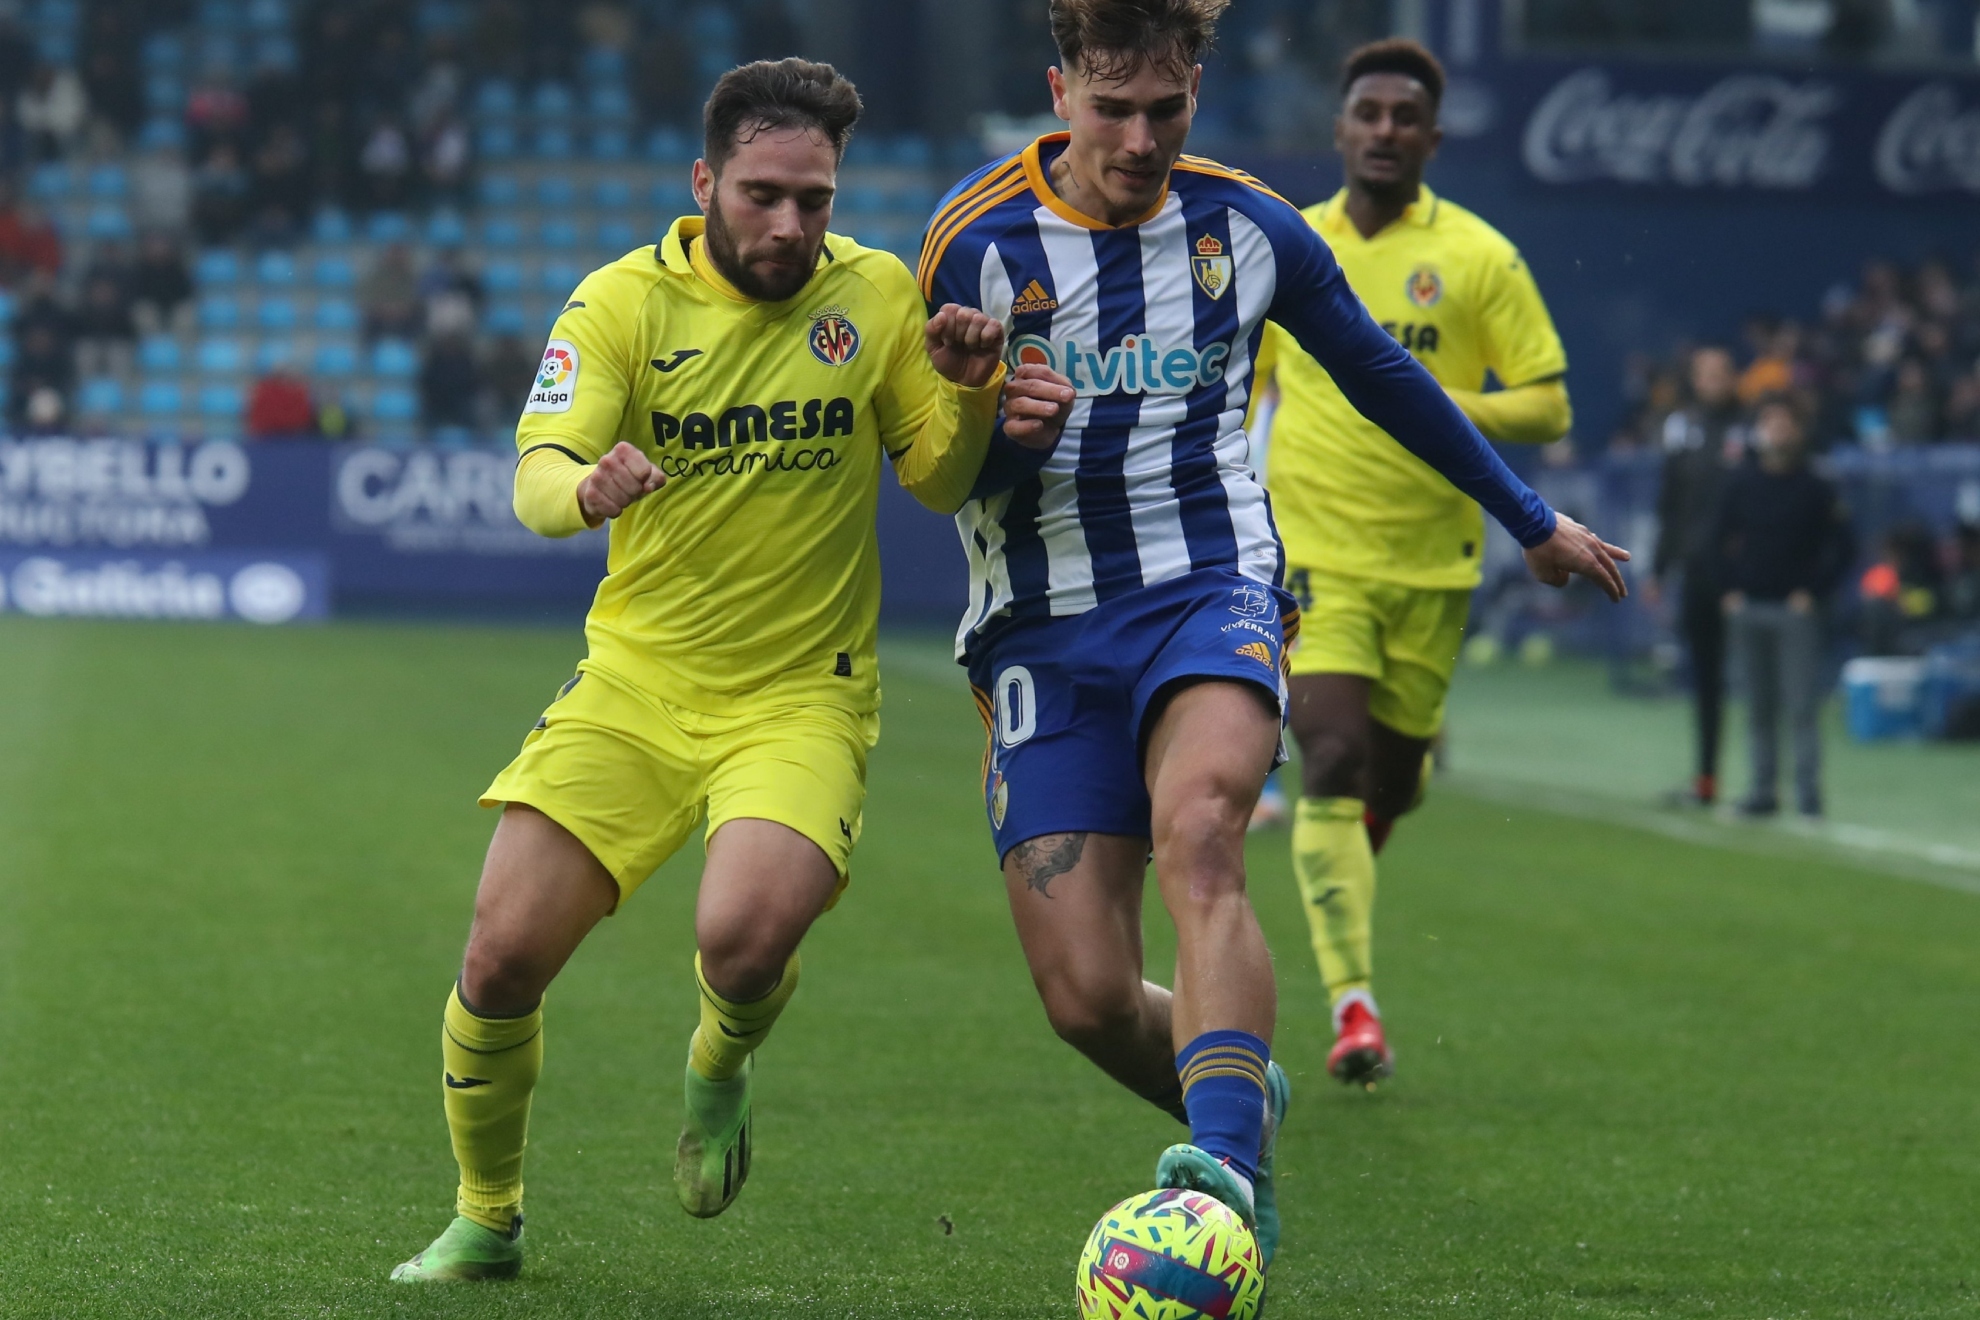 Ponferradina - Villarreal B: La Ponferradina revive al ganar a su 'ogro' Villarreal B - LaLiga SmartBank